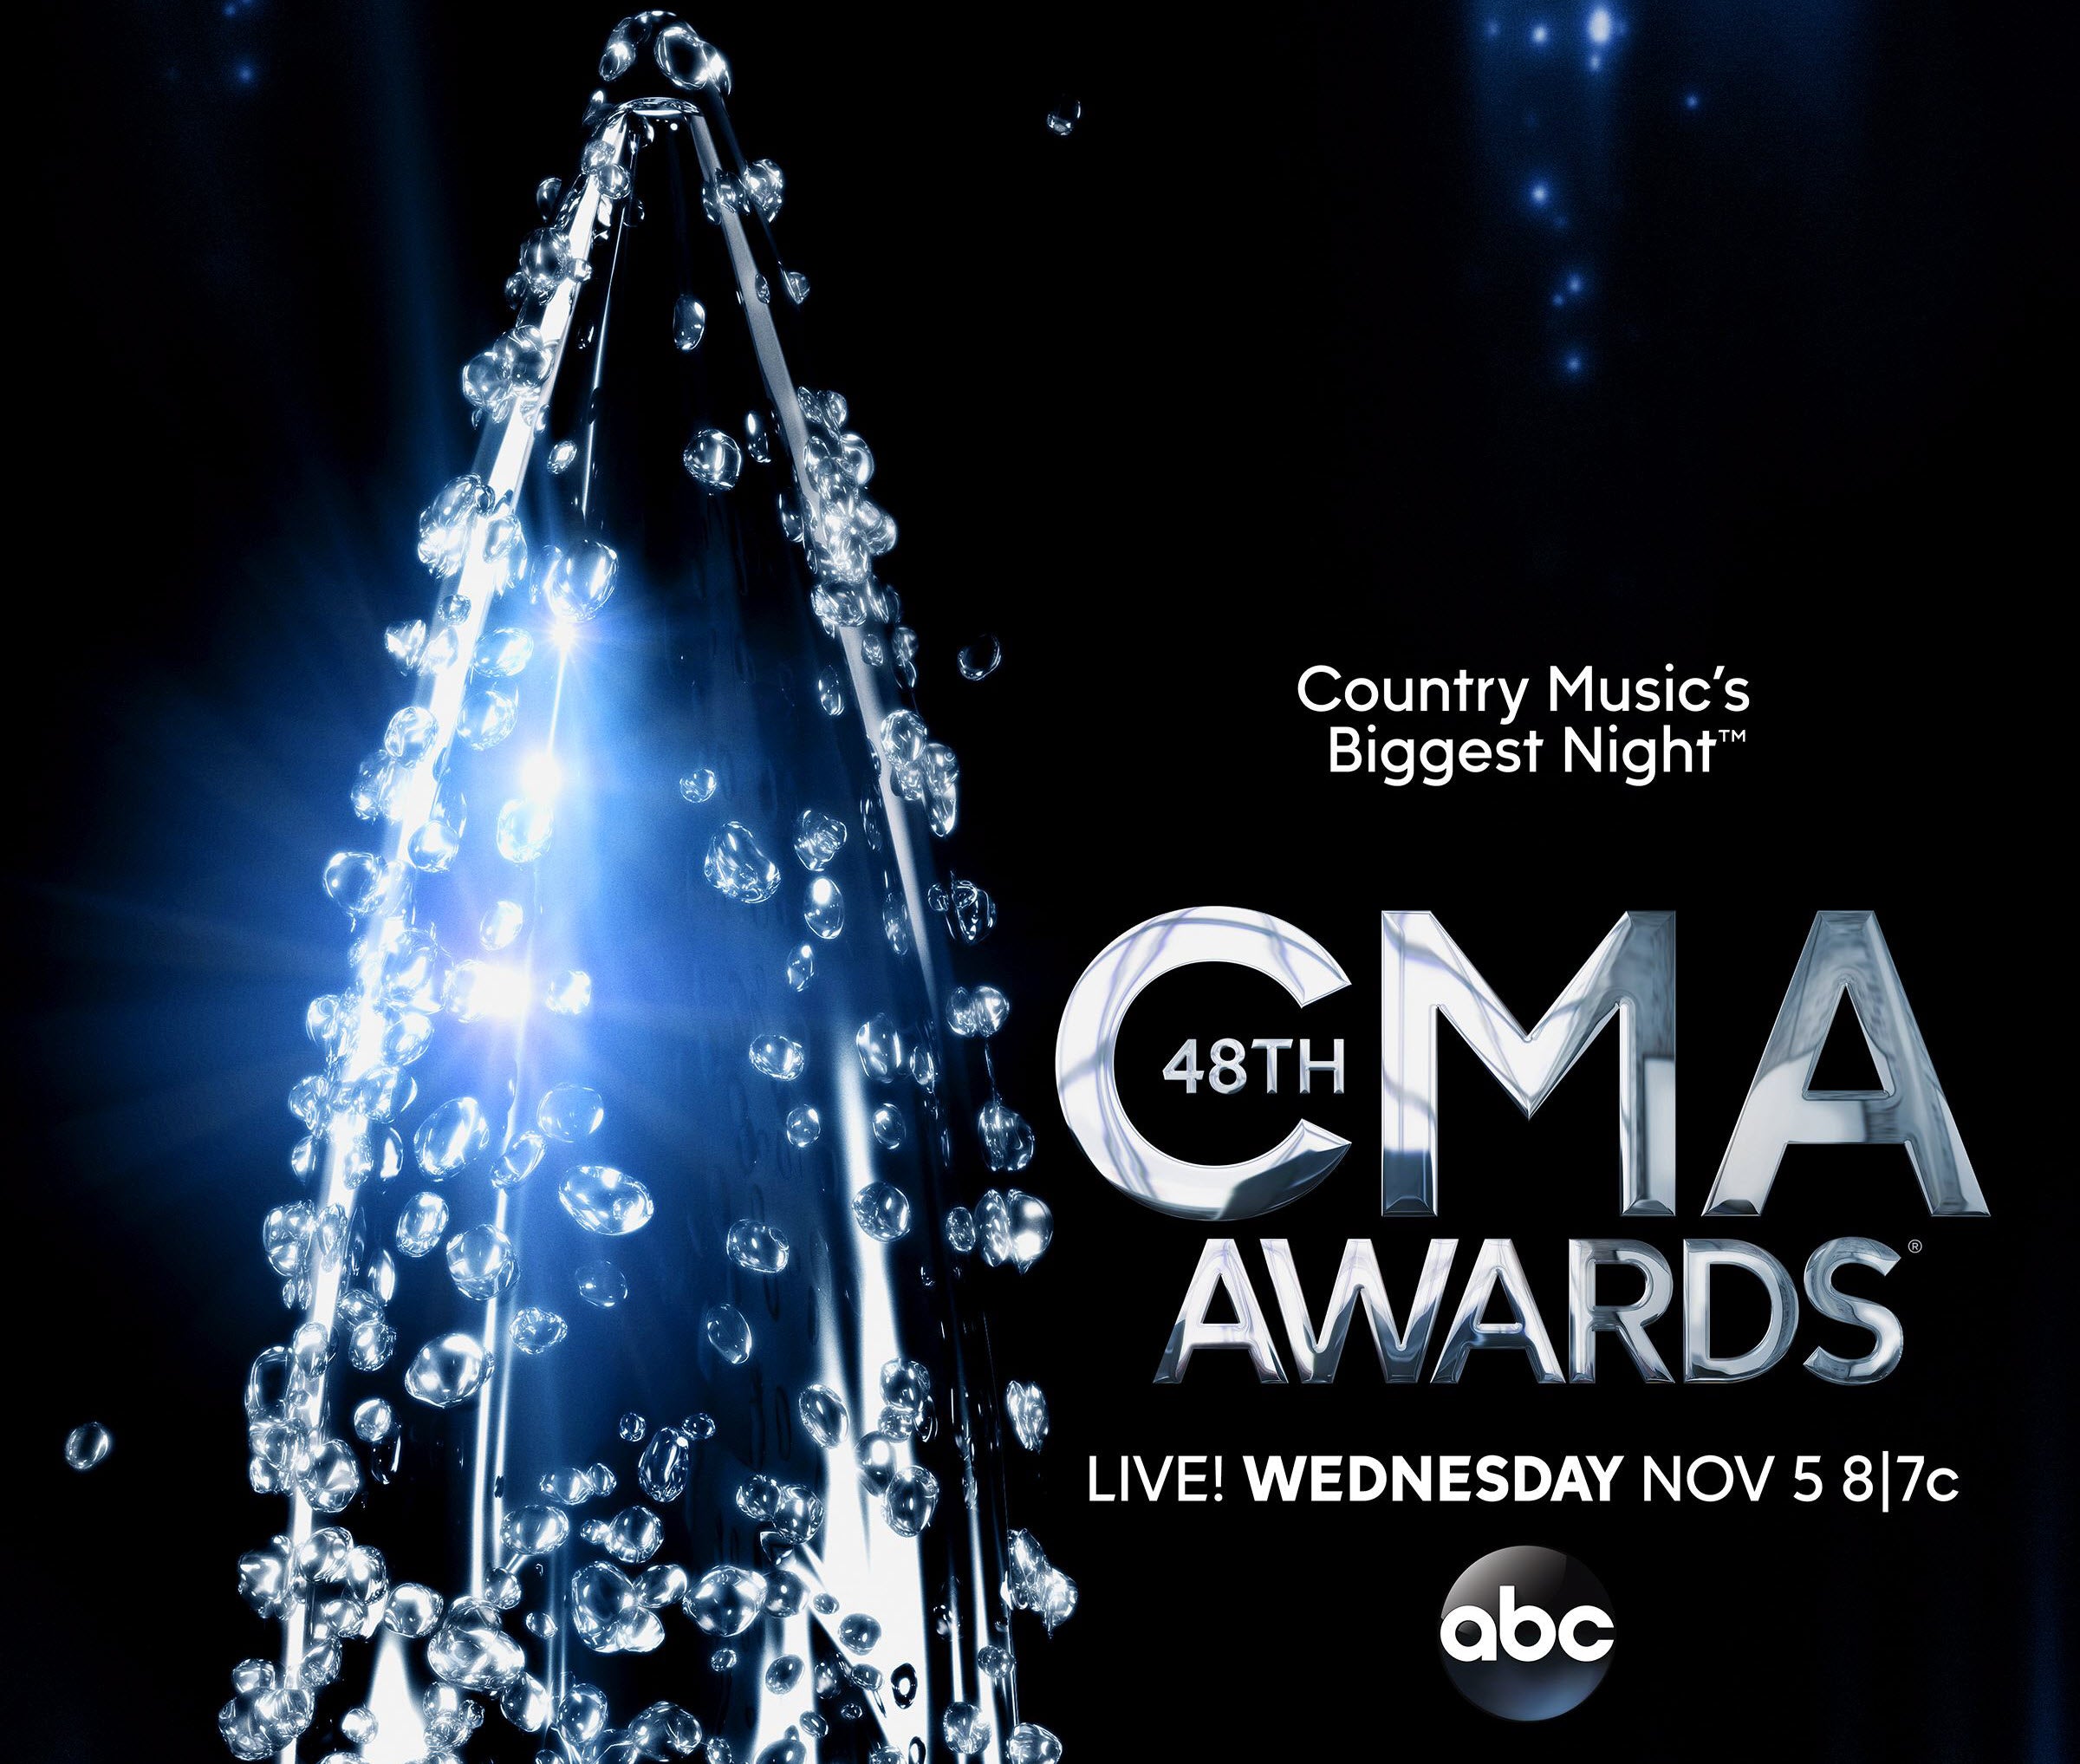 2014 CMA awards November 5